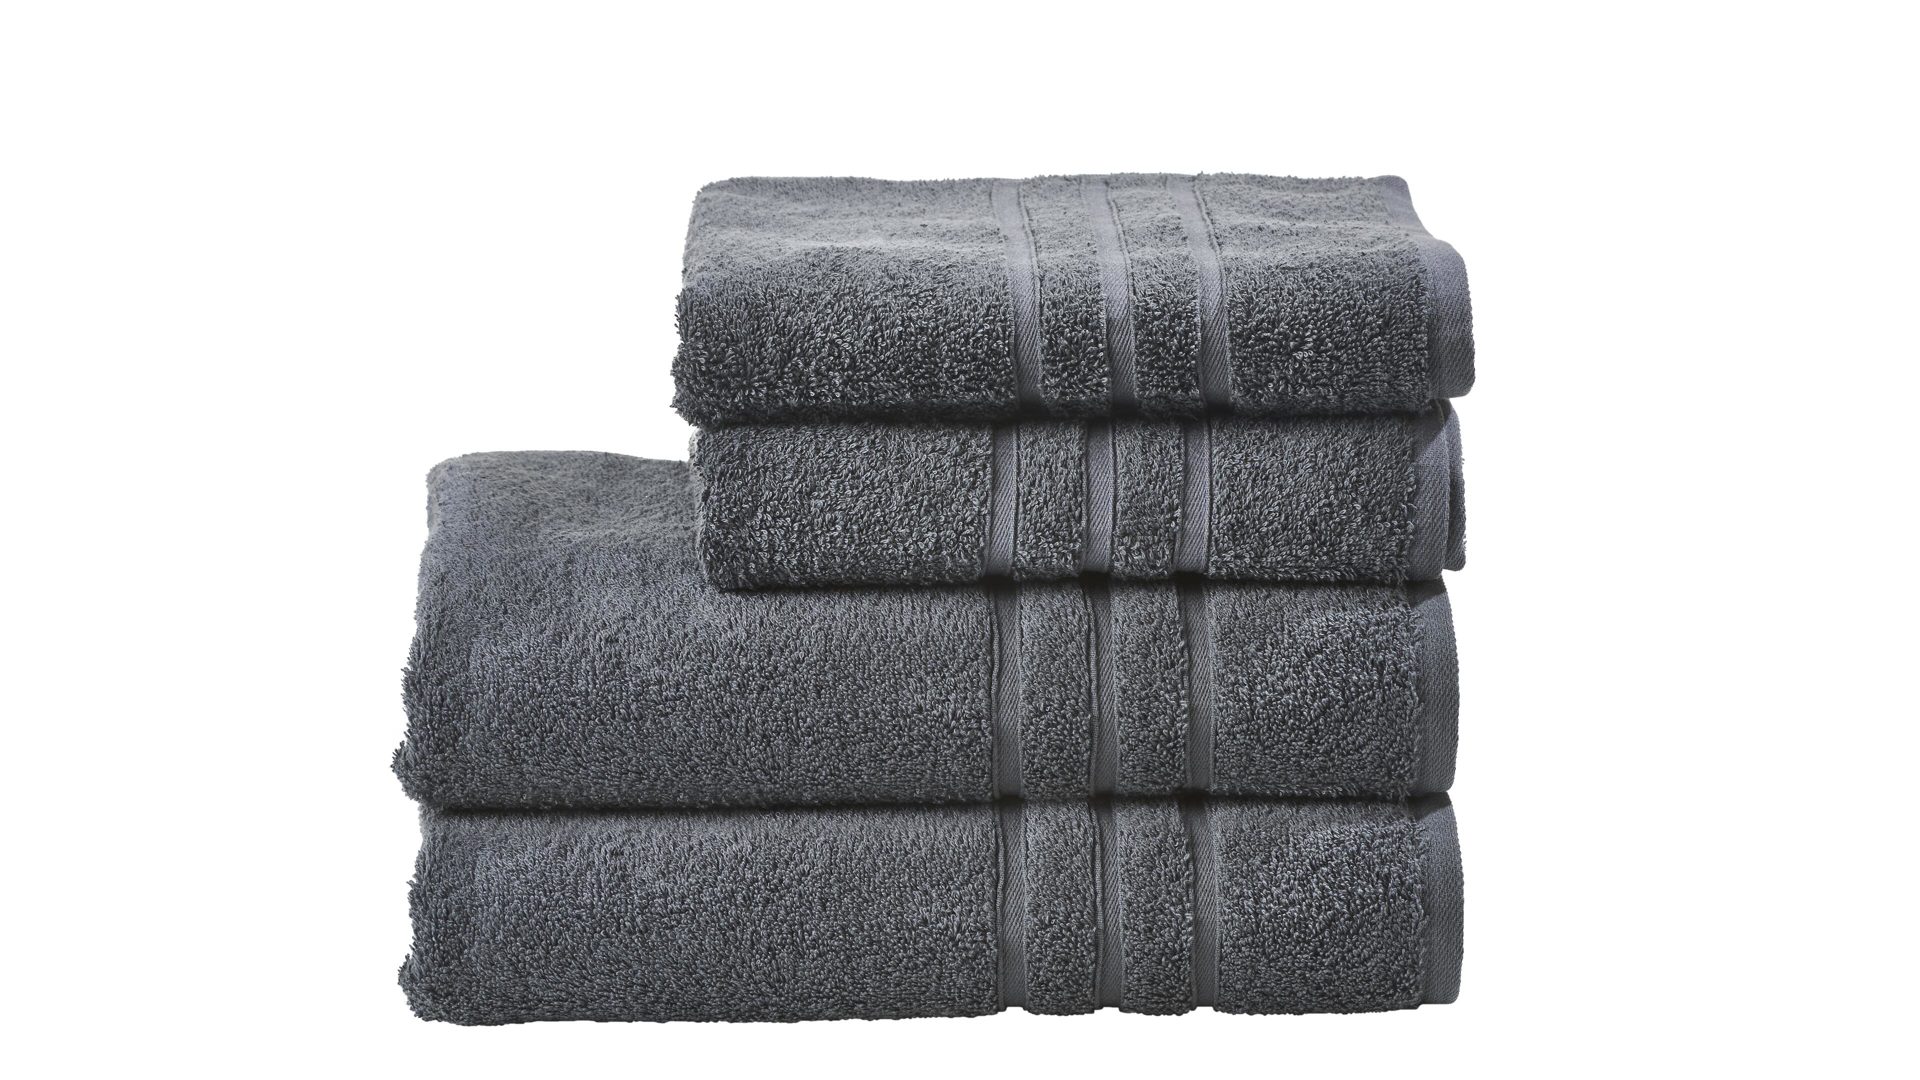 Handtuch-Set Done® by karabel home company aus Stoff in Anthrazit DONE® Handtuch-Set Daily Uni anthrazitfarbene Baumwolle – vierteilig